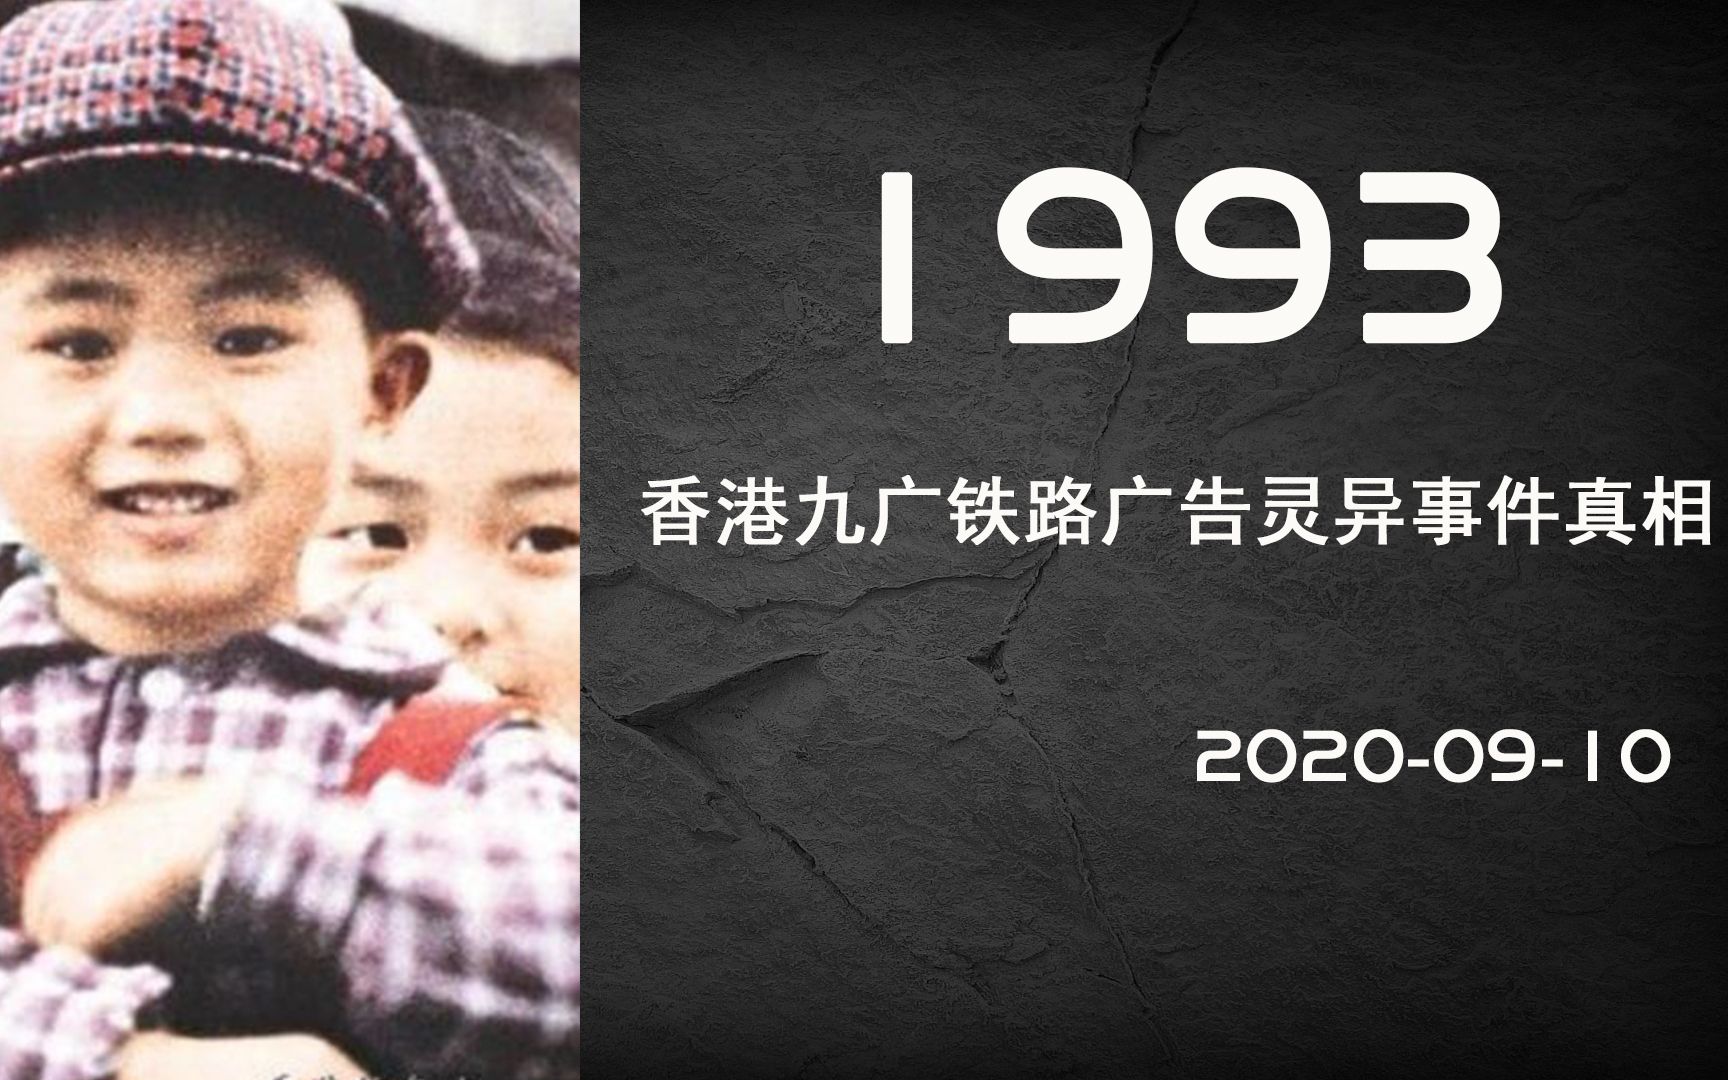 93年广九铁路事件图片